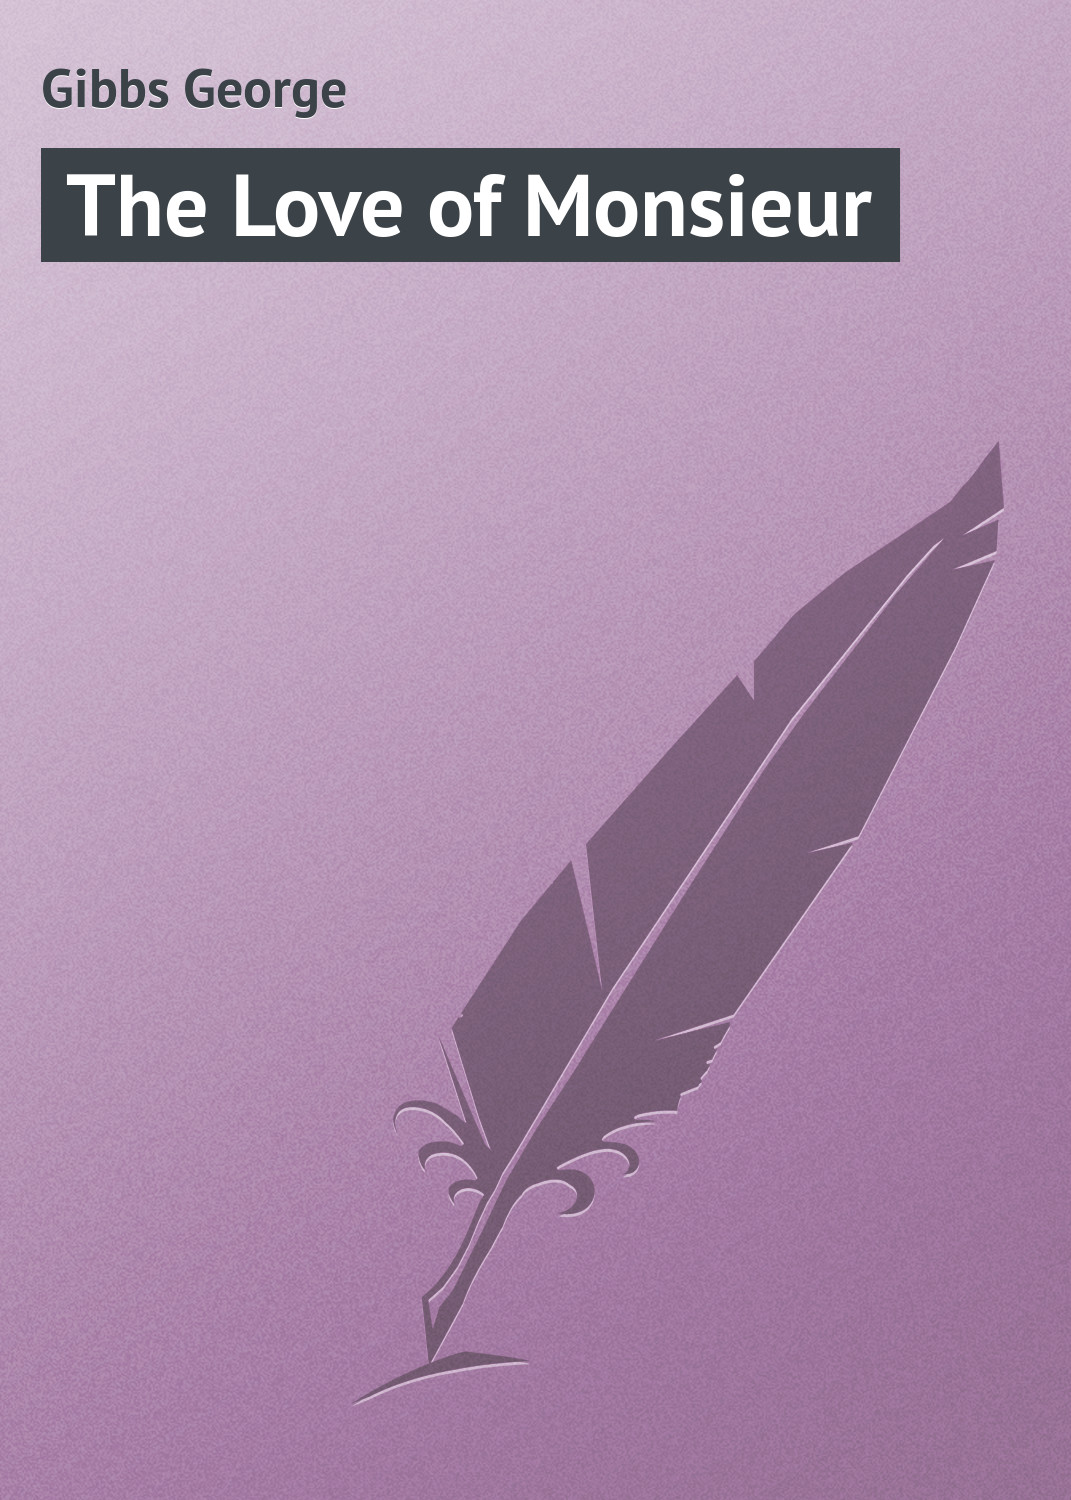 Книга The Love of Monsieur из серии , созданная George Gibbs, может относится к жанру Зарубежная классика, Иностранные языки. Стоимость электронной книги The Love of Monsieur с идентификатором 23169363 составляет 5.99 руб.